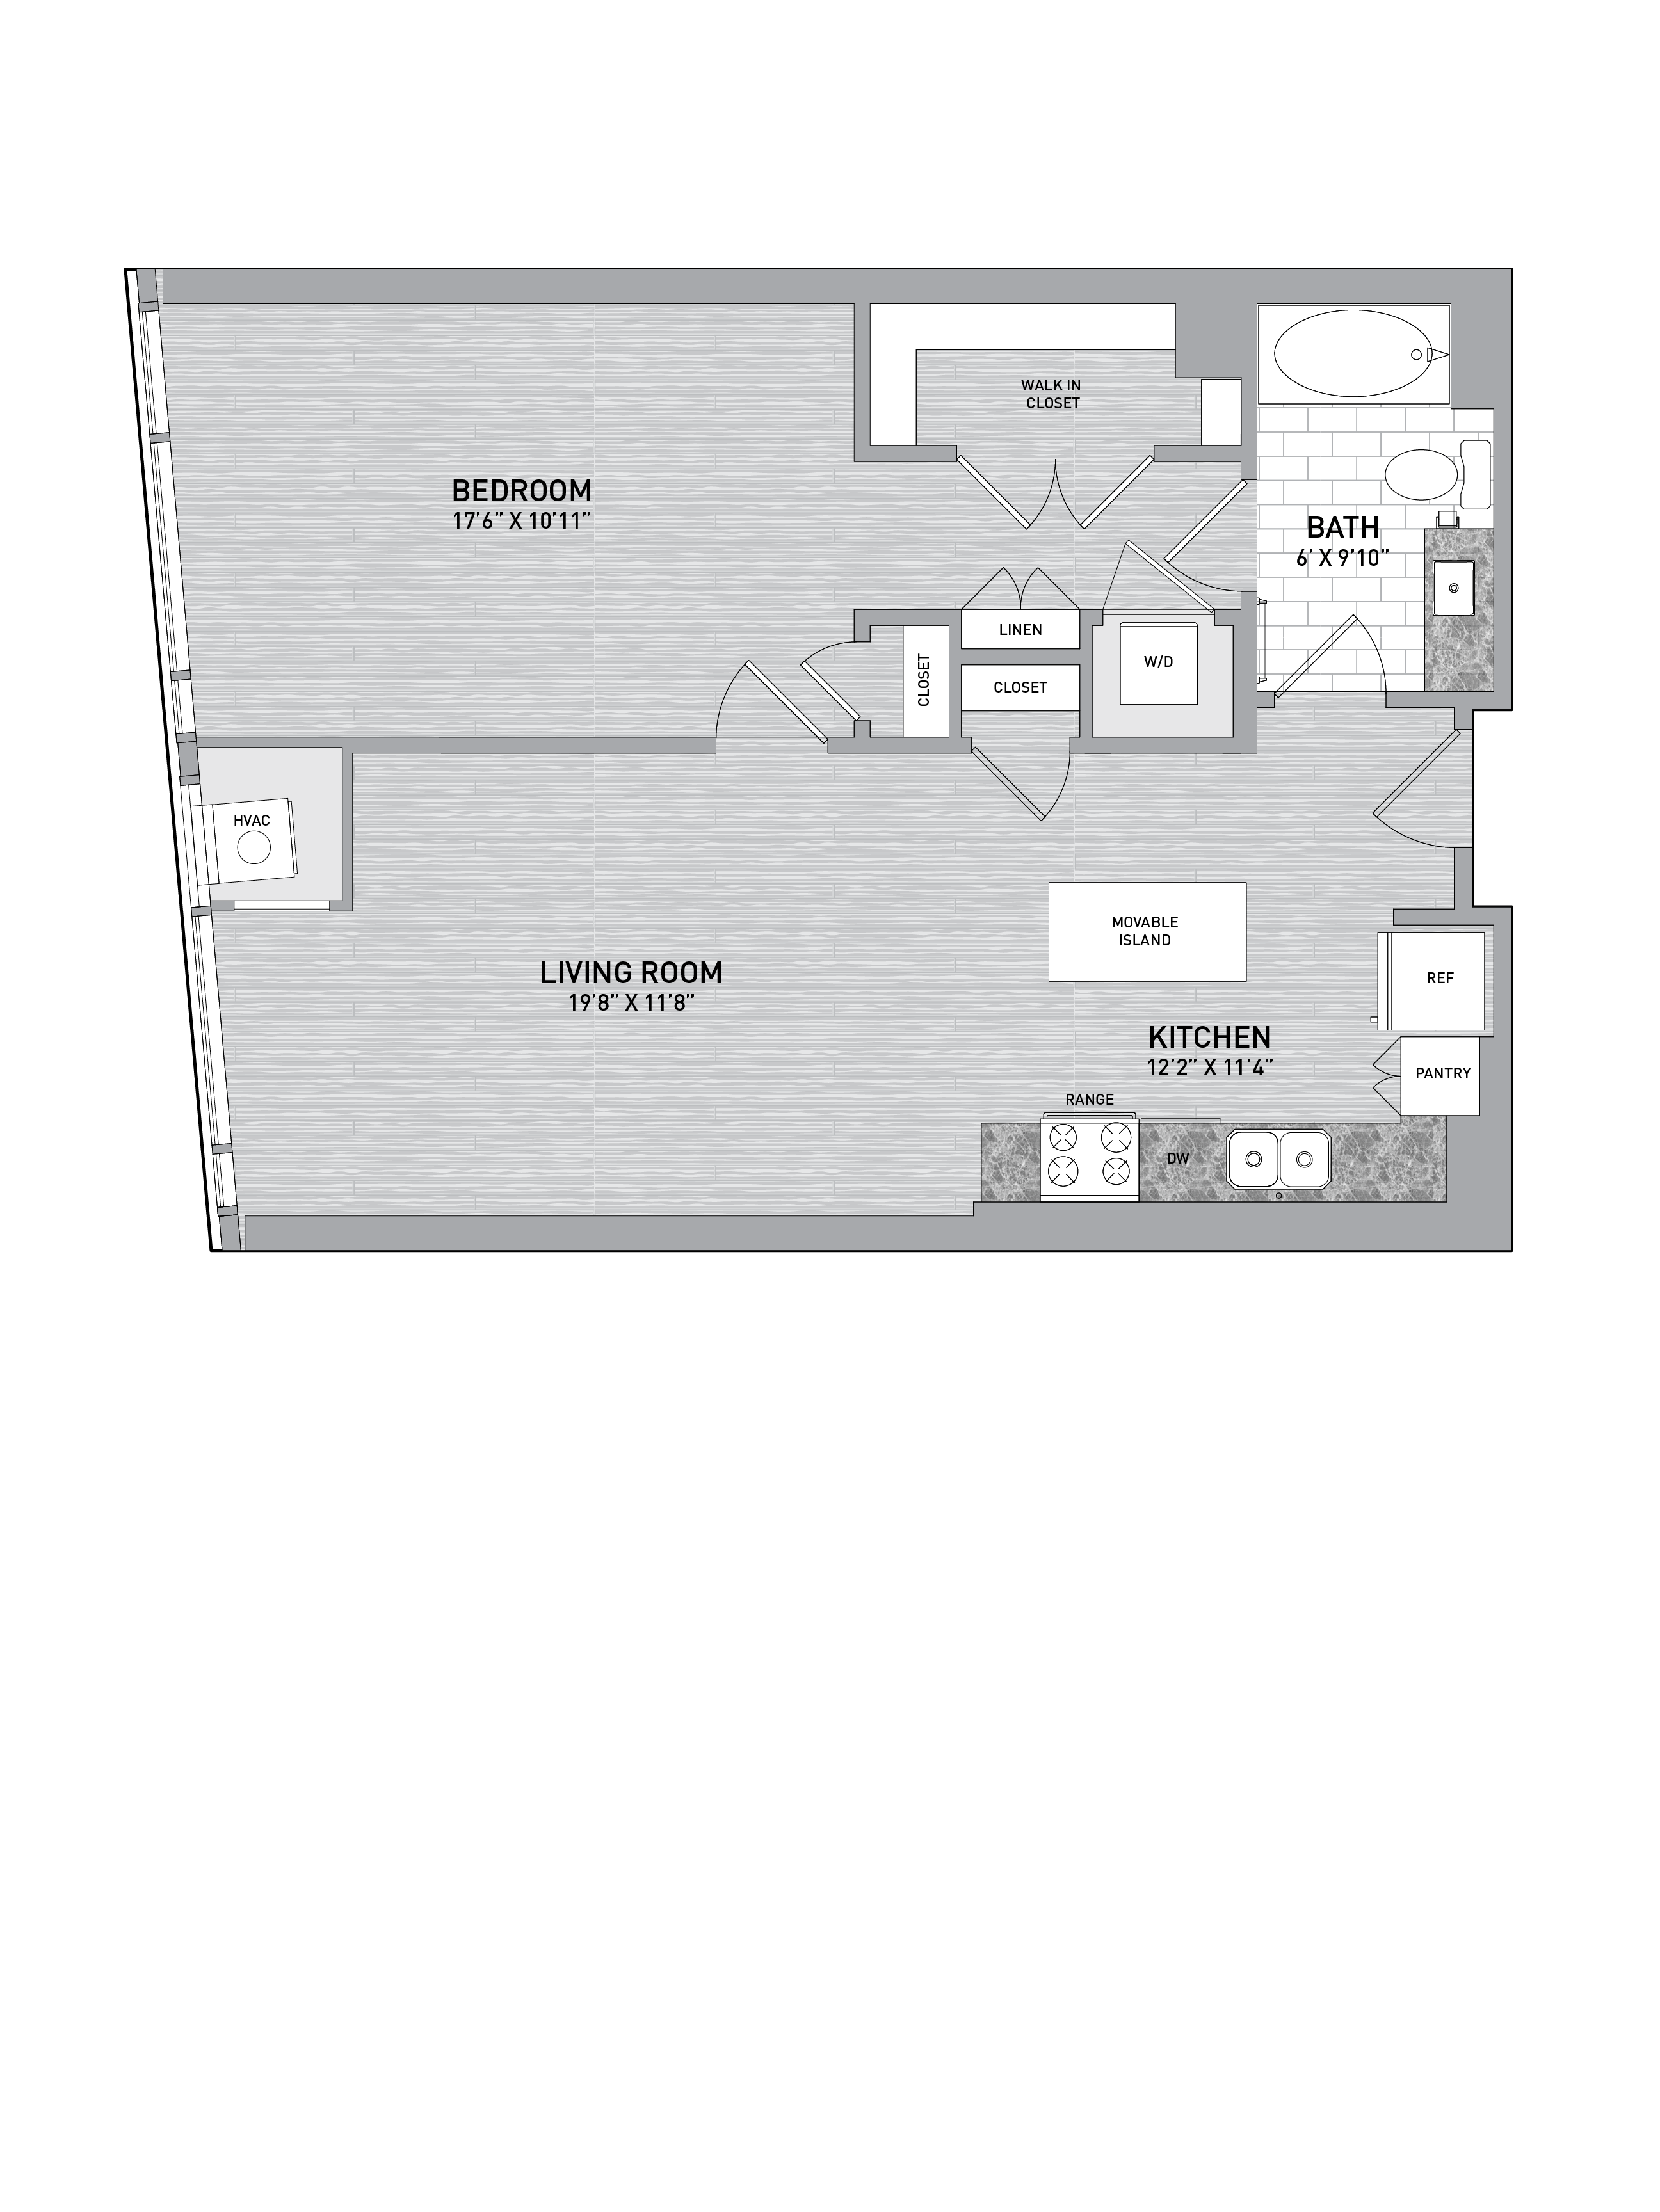 floorplan image of unit id 0706